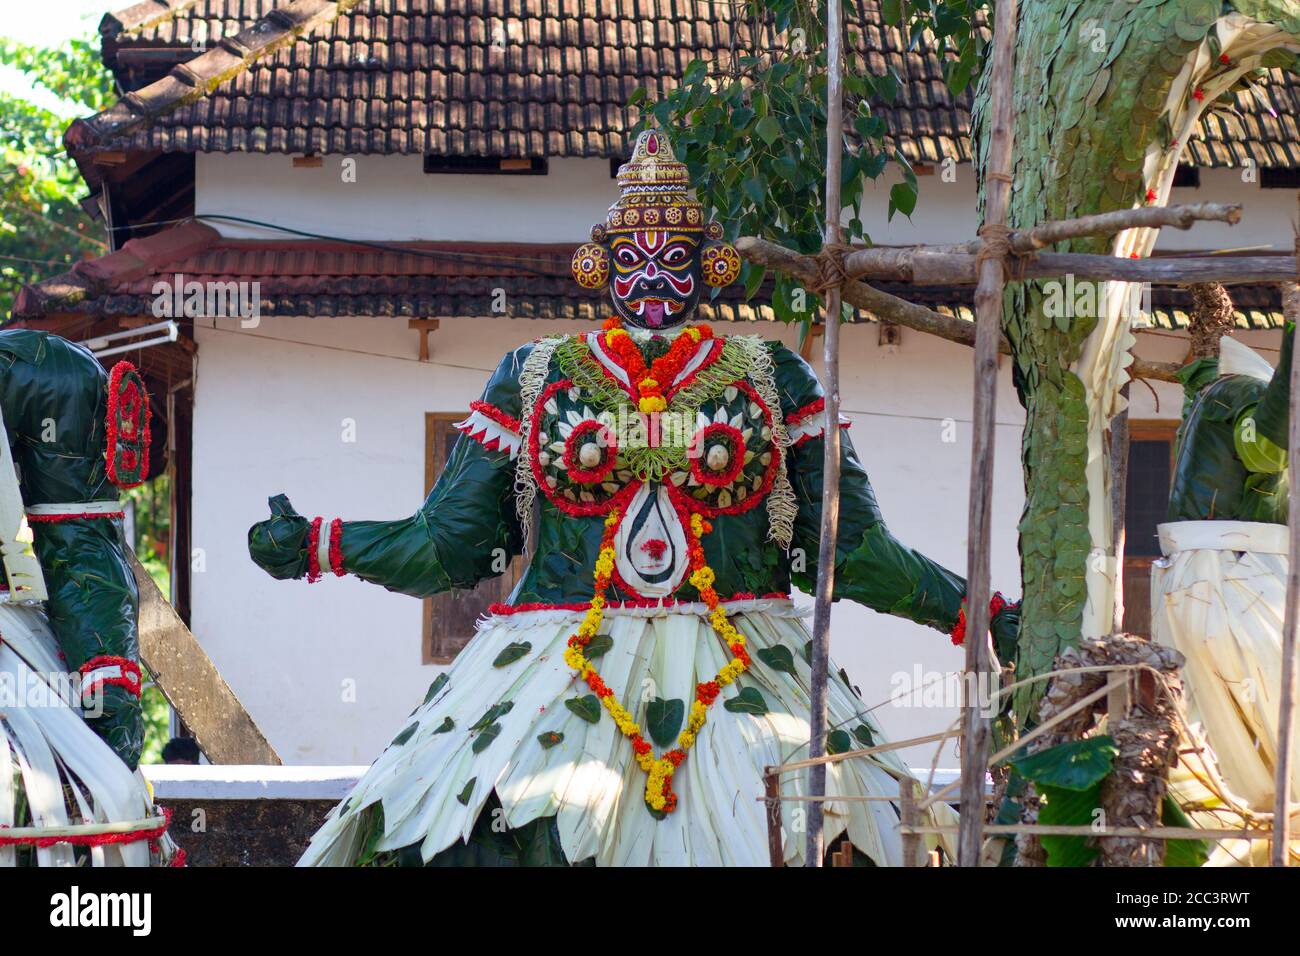 Neelamperoor Padayani am Neelamperoor Palli Bhagavathi Tempel, Alappuzha. Padayani ist ein traditioneller Volkstanz und eine rituelle Kunstform. Stockfoto